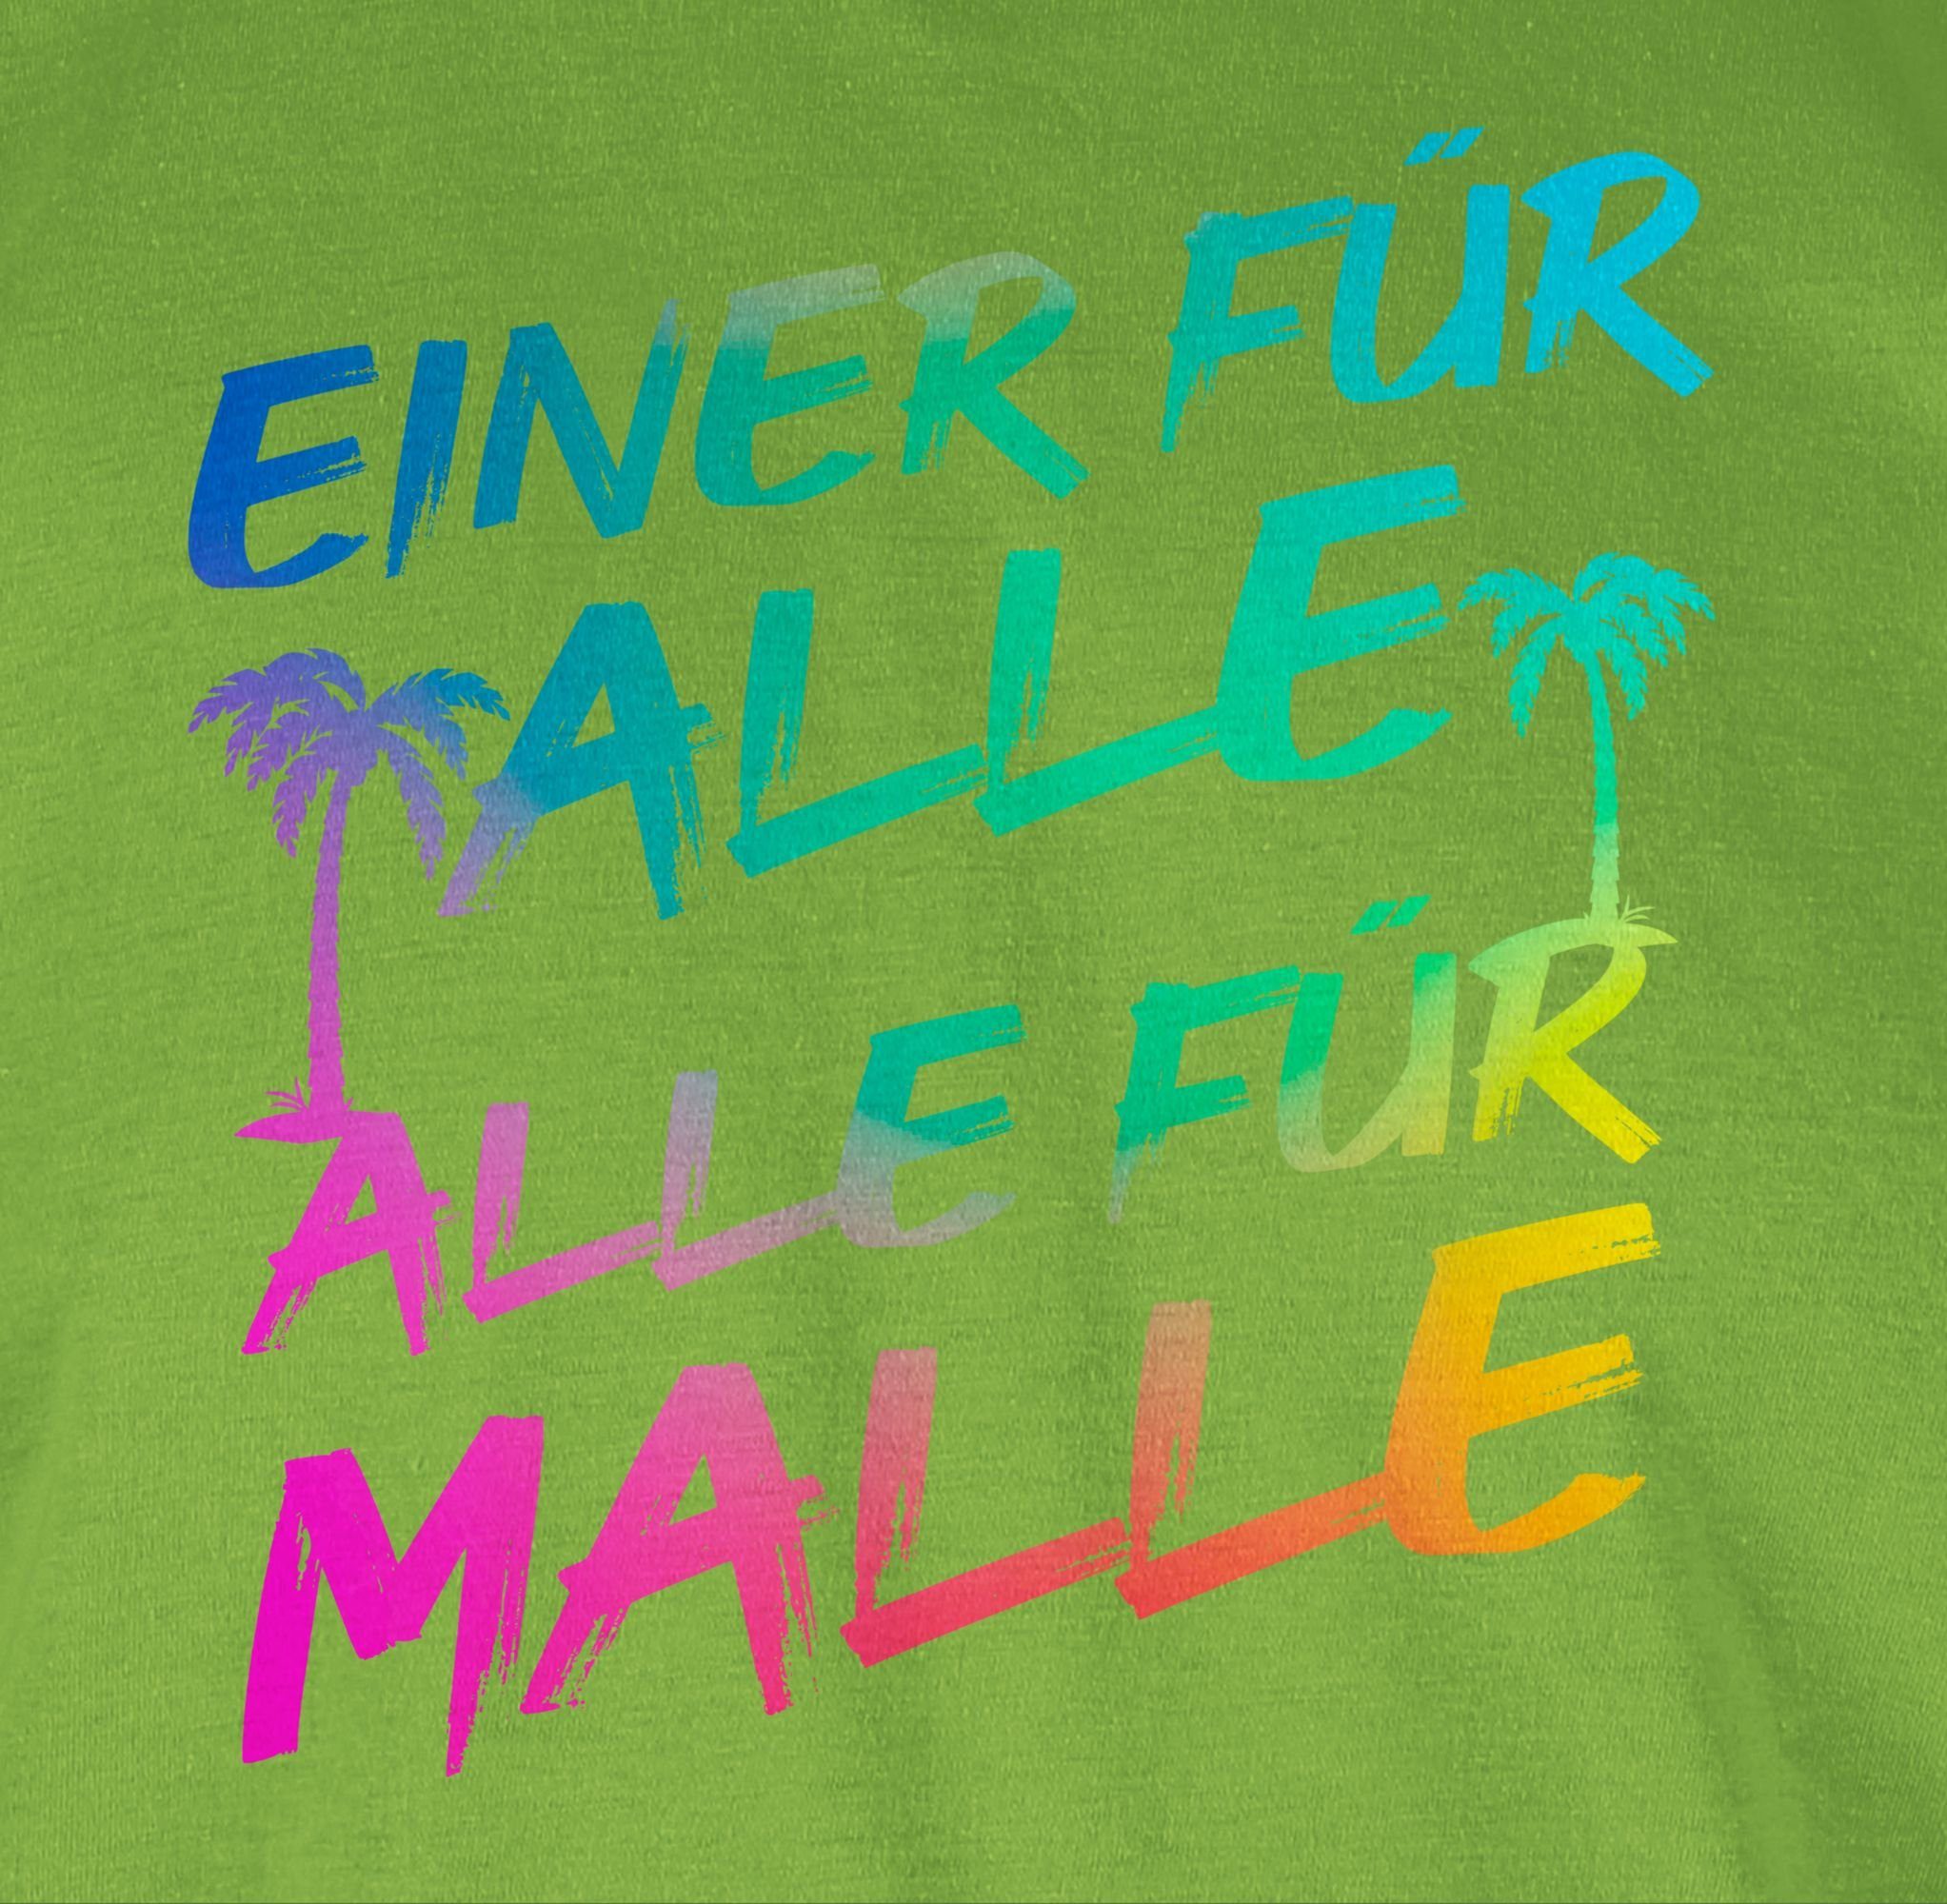 Shirtracer T-Shirt Malle Sommerurlaub Herren Einer Hellgrün - alle Alle Alle 03 für für für Malle